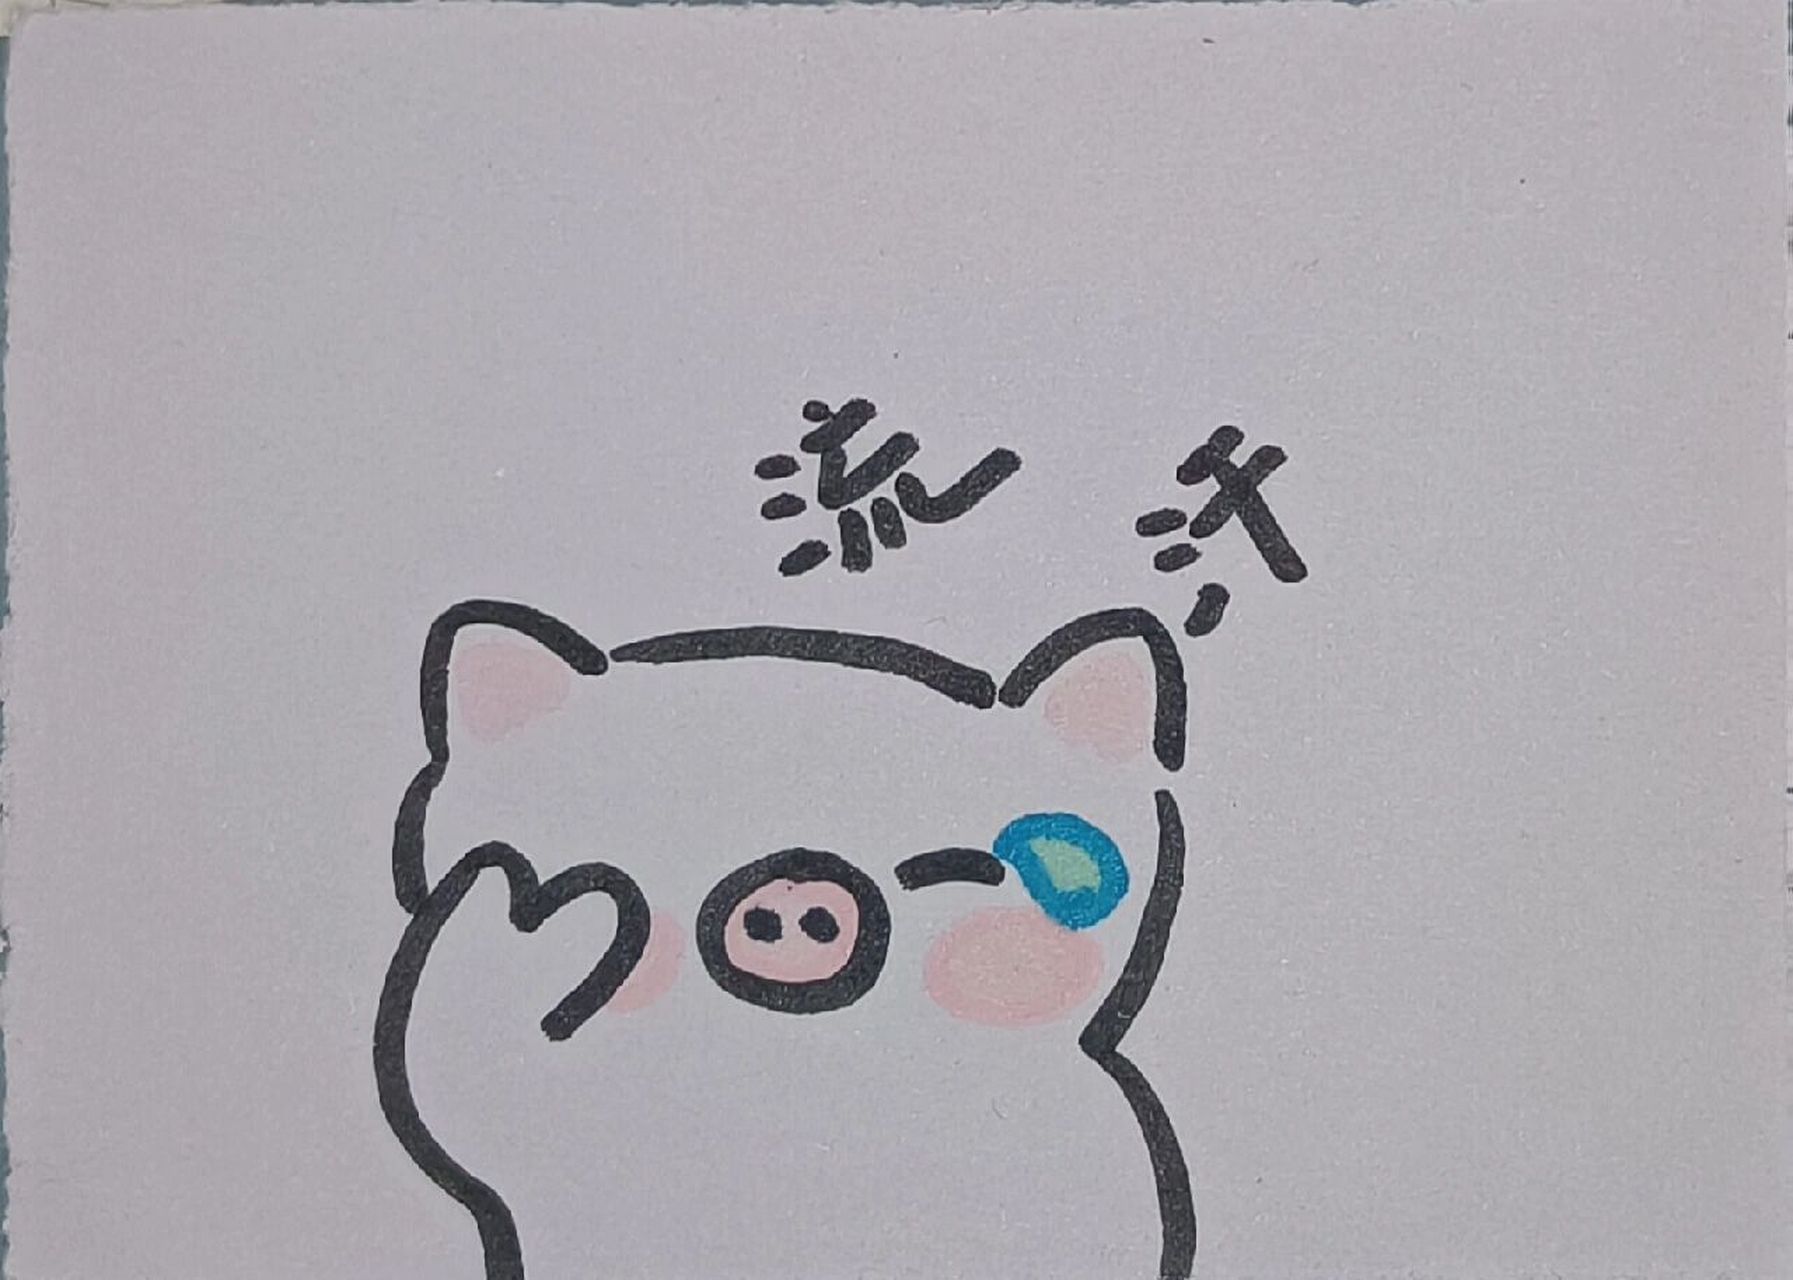 猪头的简笔画 可爱图片